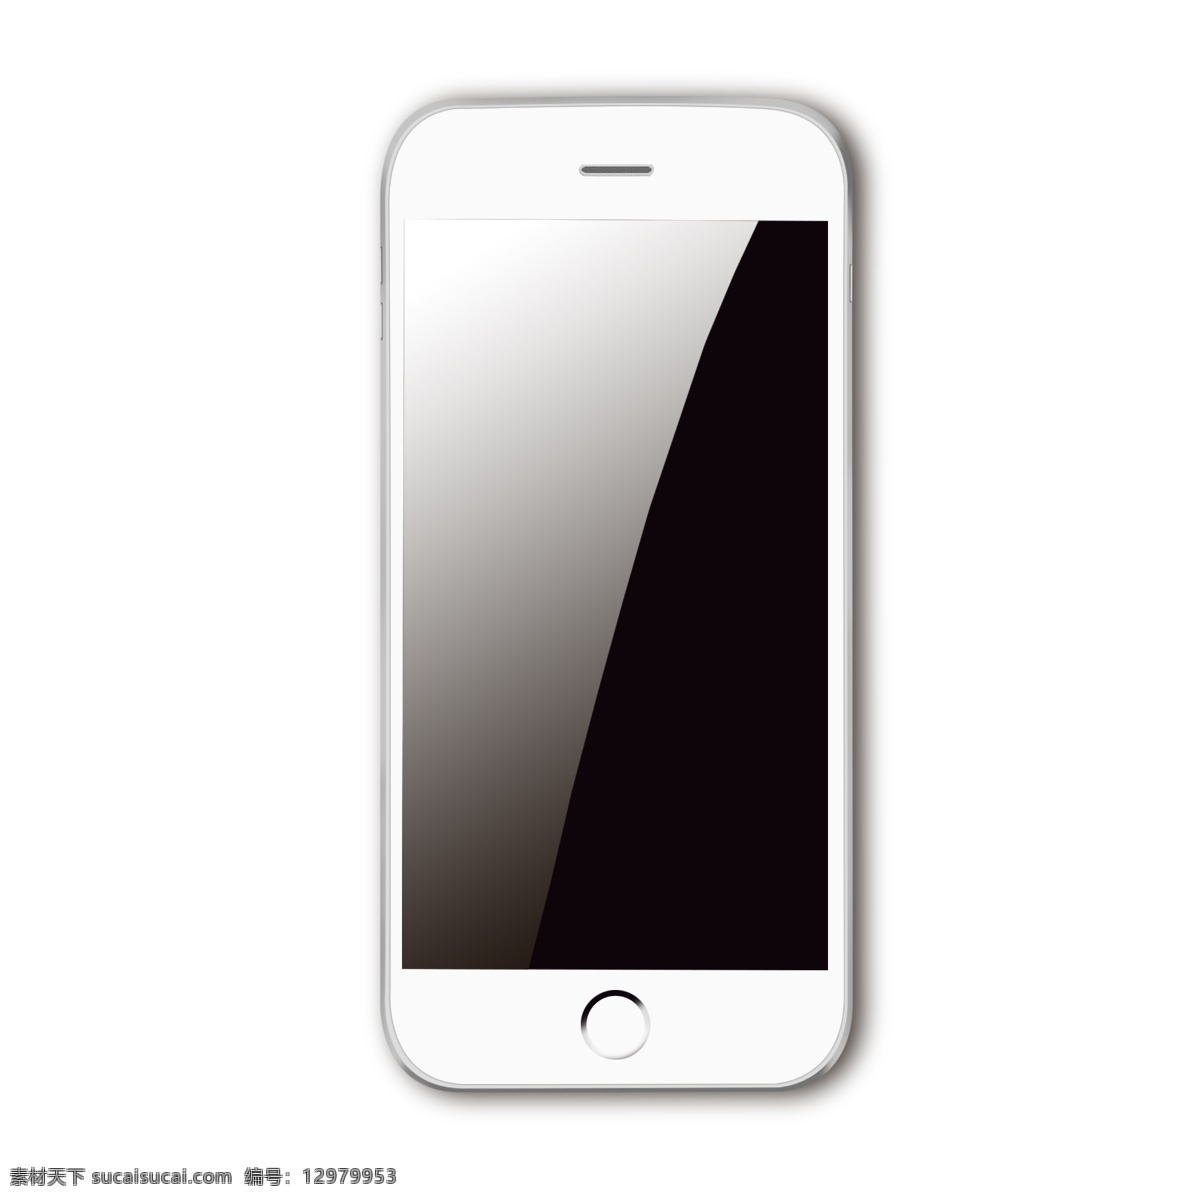 白色 3d 仿真 手机 白色苹果手机 虚拟手机 模拟手机 仿真手机 写实手机 触屏手机 3d手机